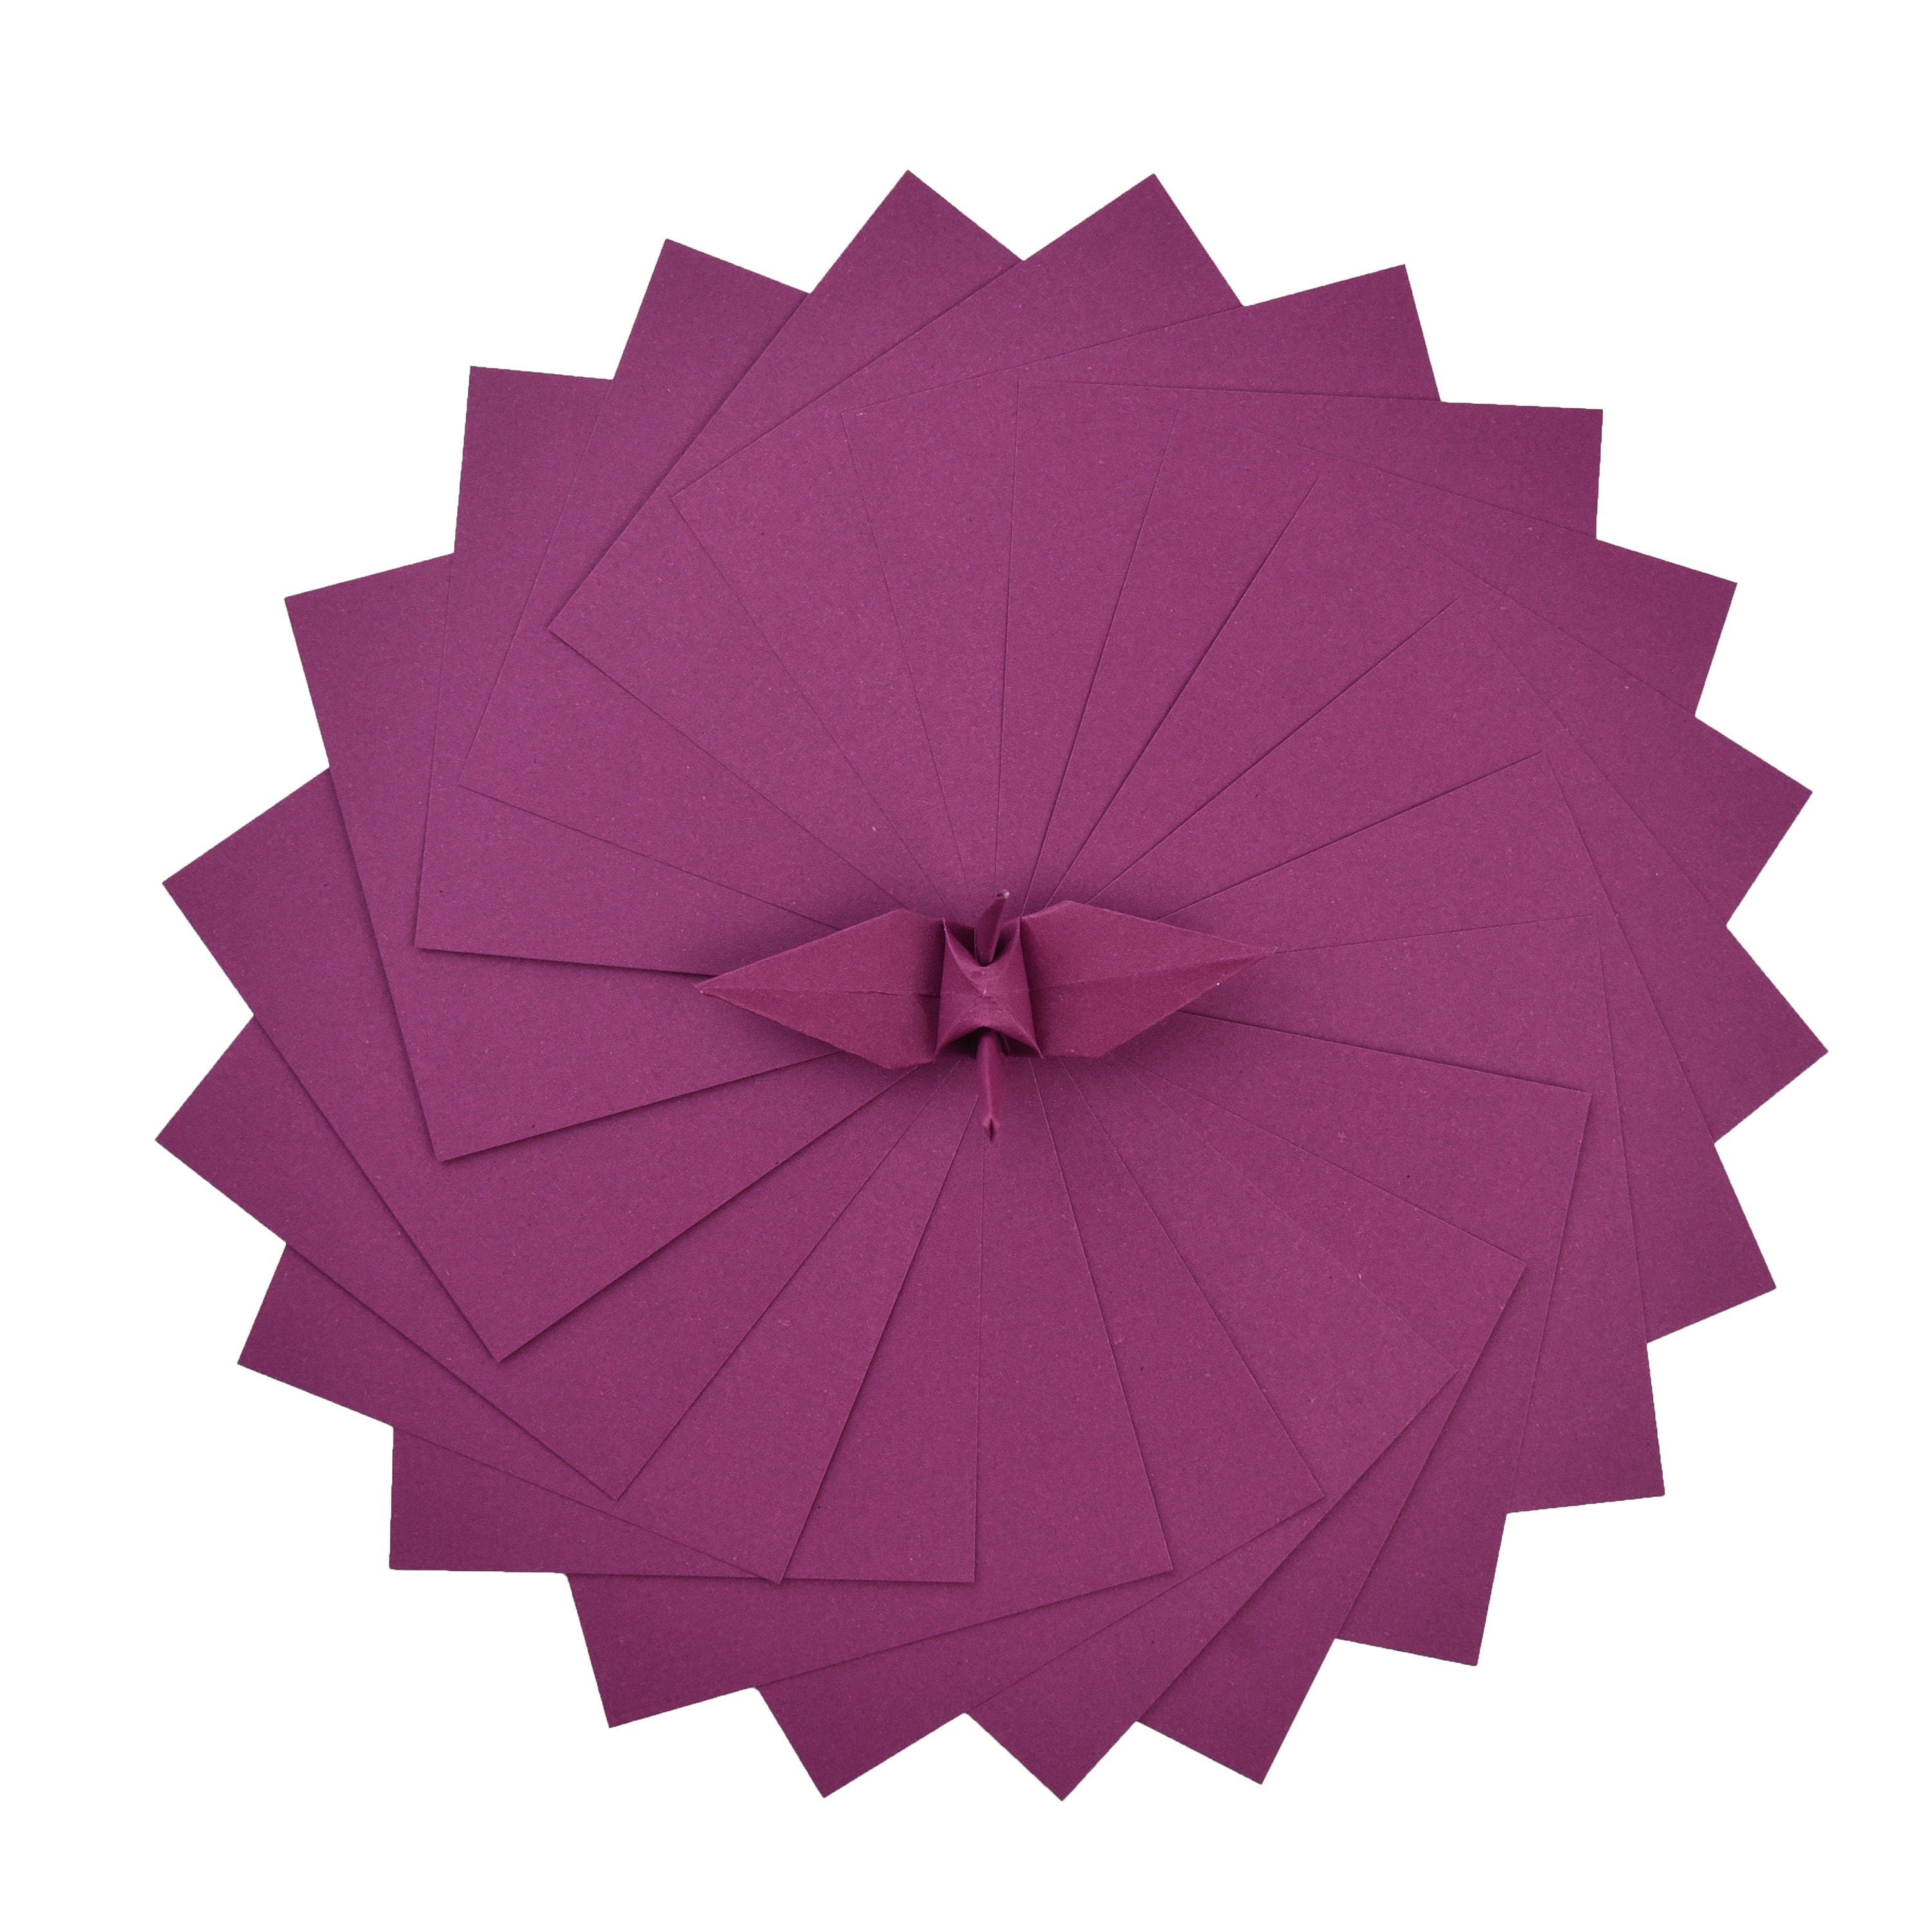 100 hojas de papel de origami color burdeos - 3x3 pulgadas - Paquete de papel cuadrado para plegado, grullas de origami y decoración - S09